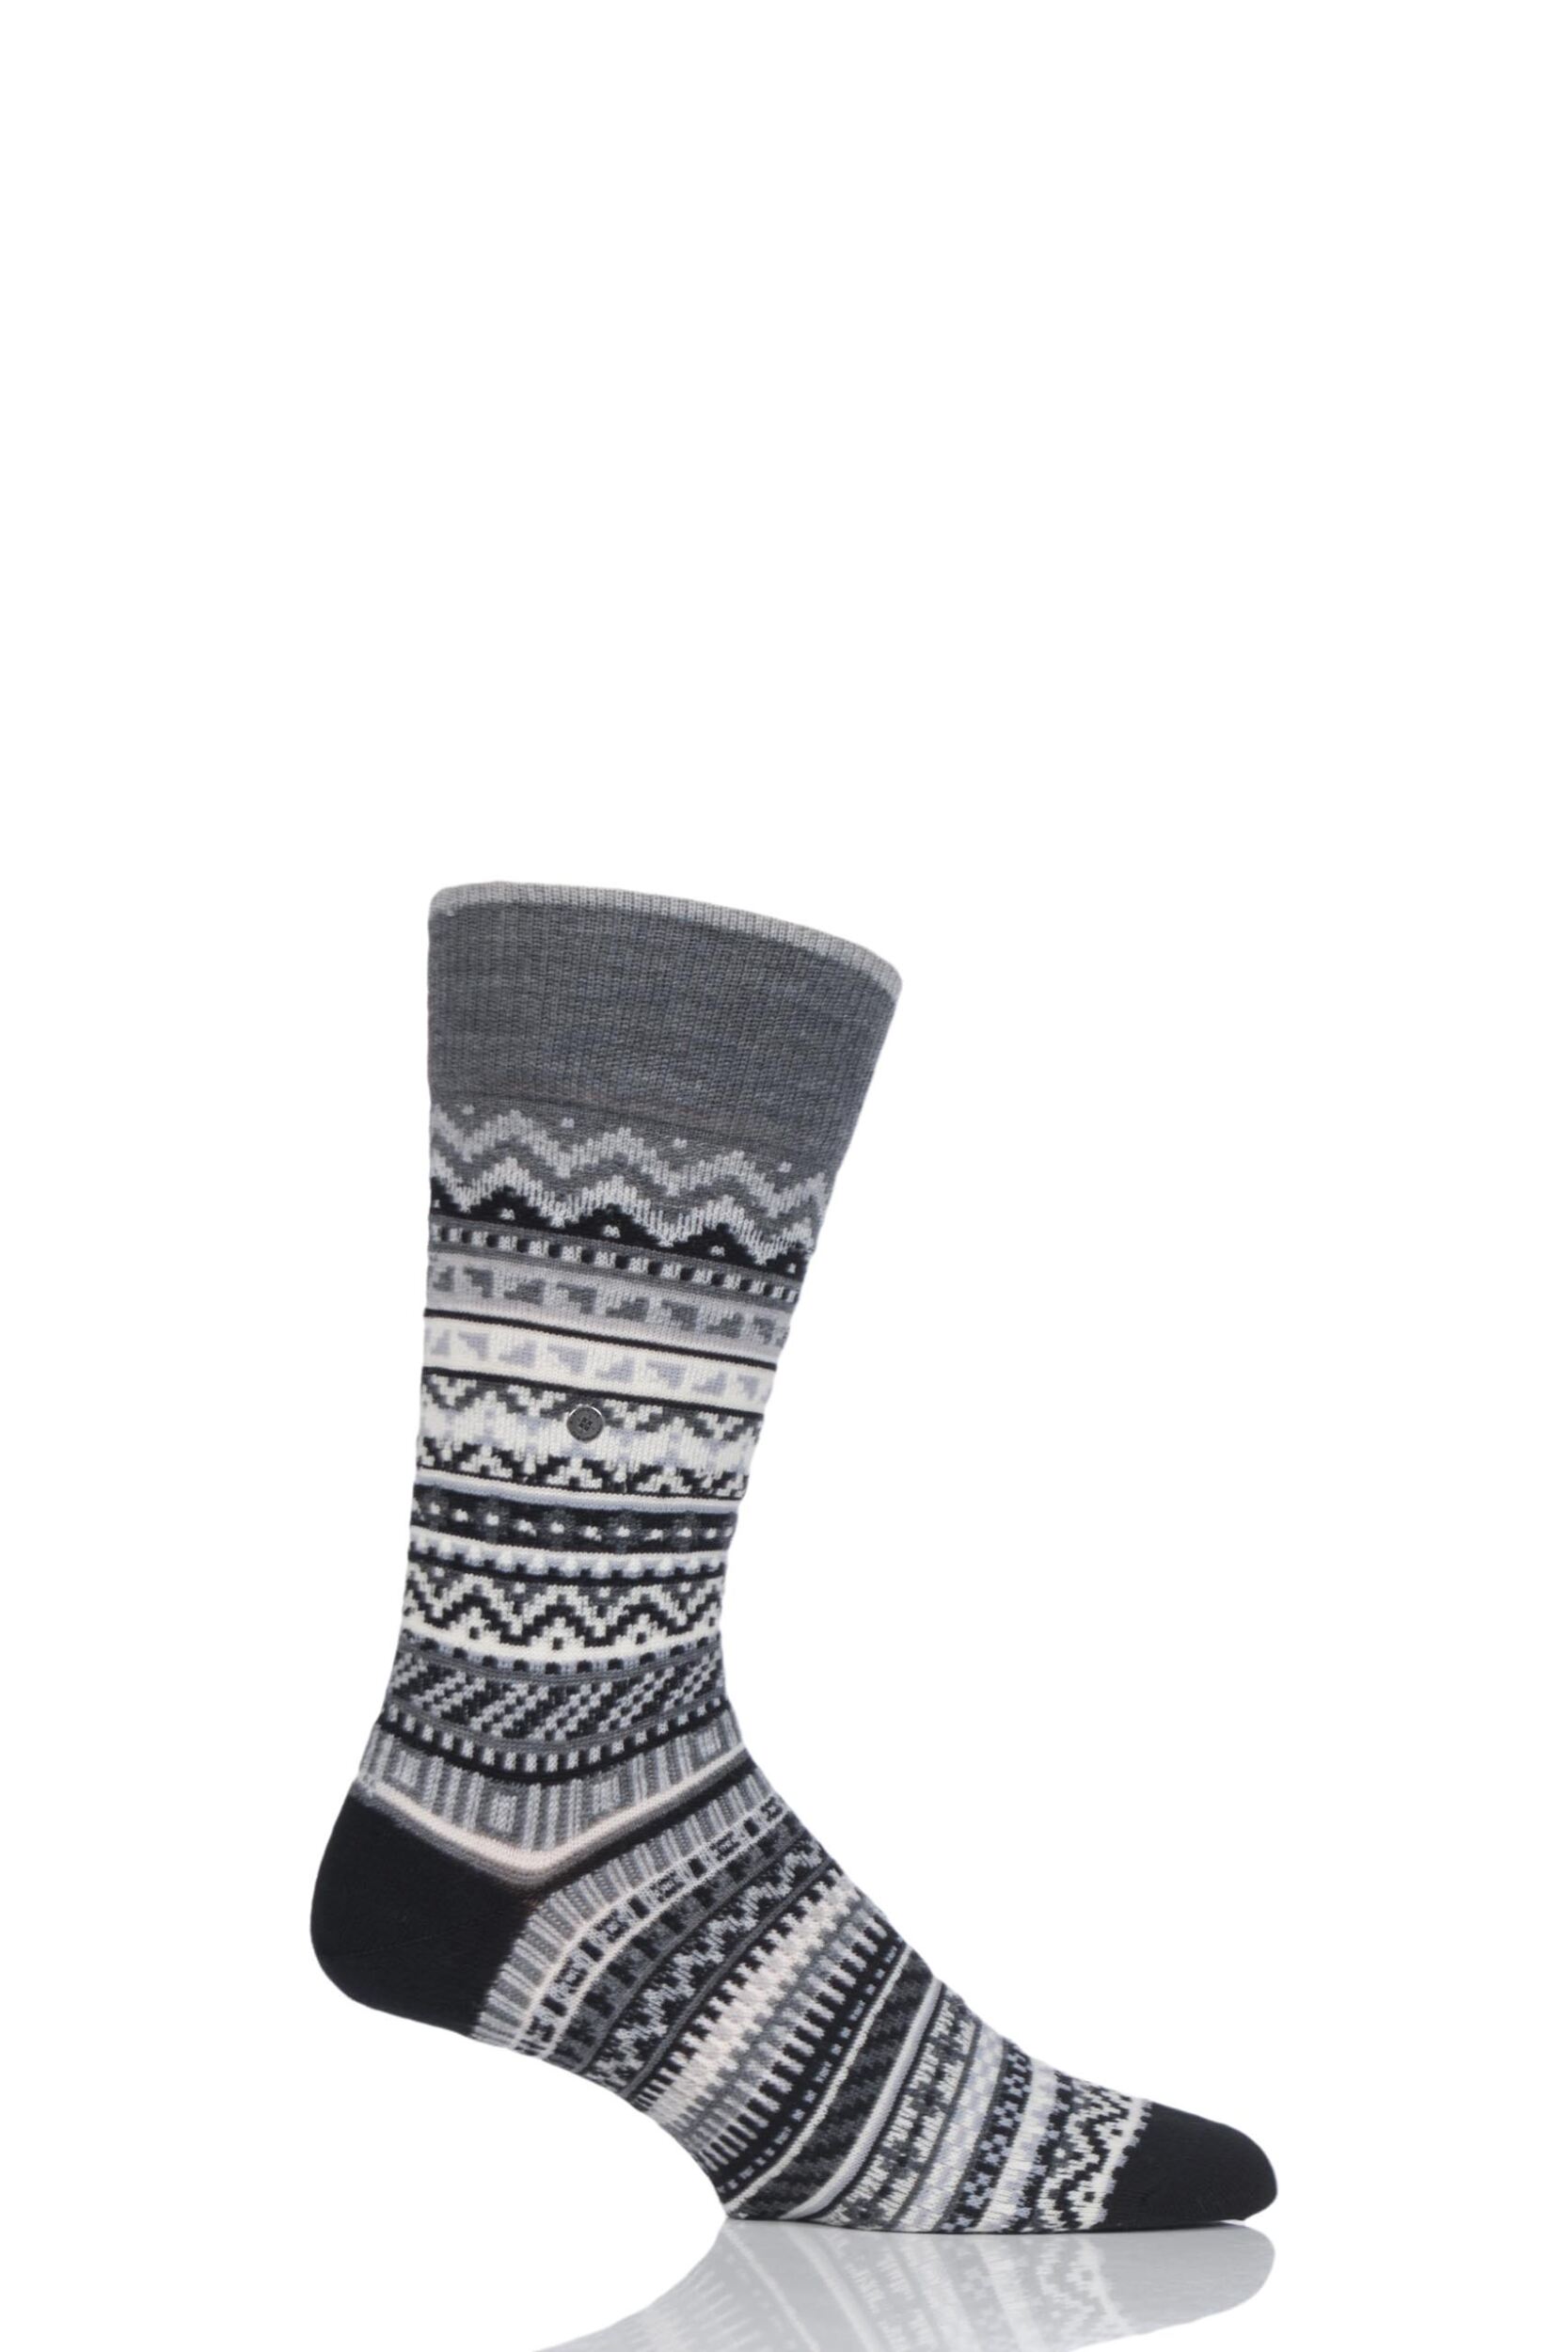 Mens 1 Pair Burlington Fair Isle Virgin Wool Socks | eBay